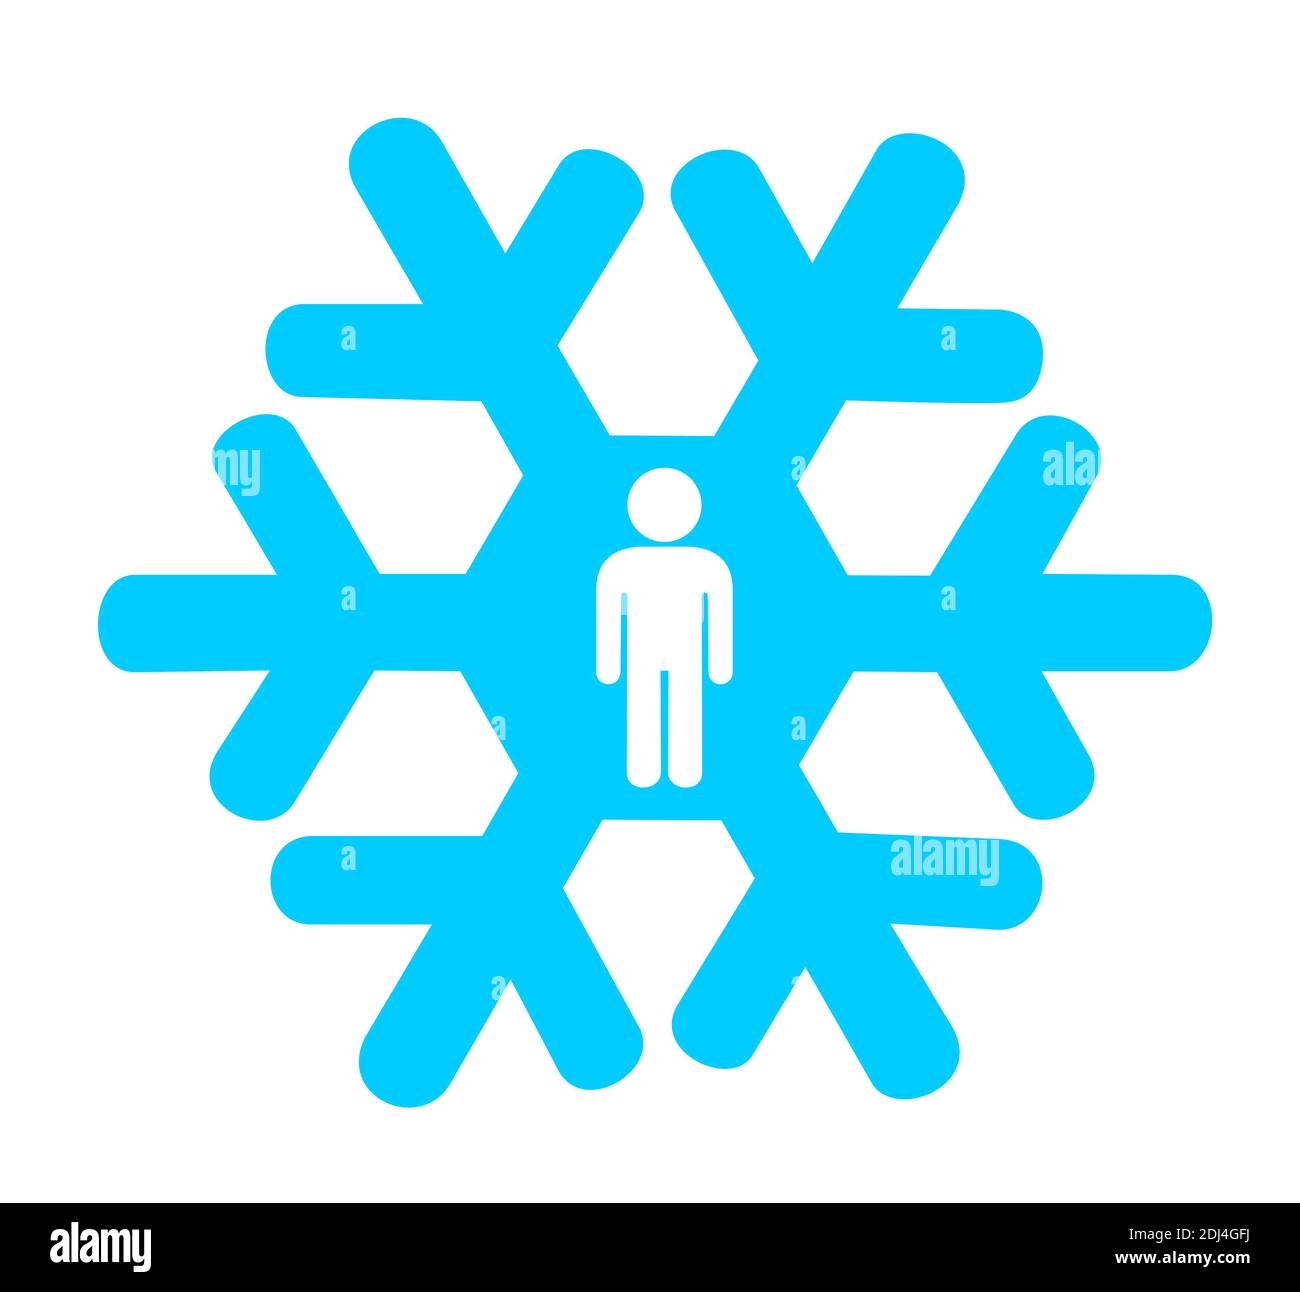 Métaphore signification - flocon de neige avec silhouette de l'homme comme symbole de la génération de flocon de neige - personnes faibles, fragiles, vulnérables. Illustration vectorielle Banque D'Images